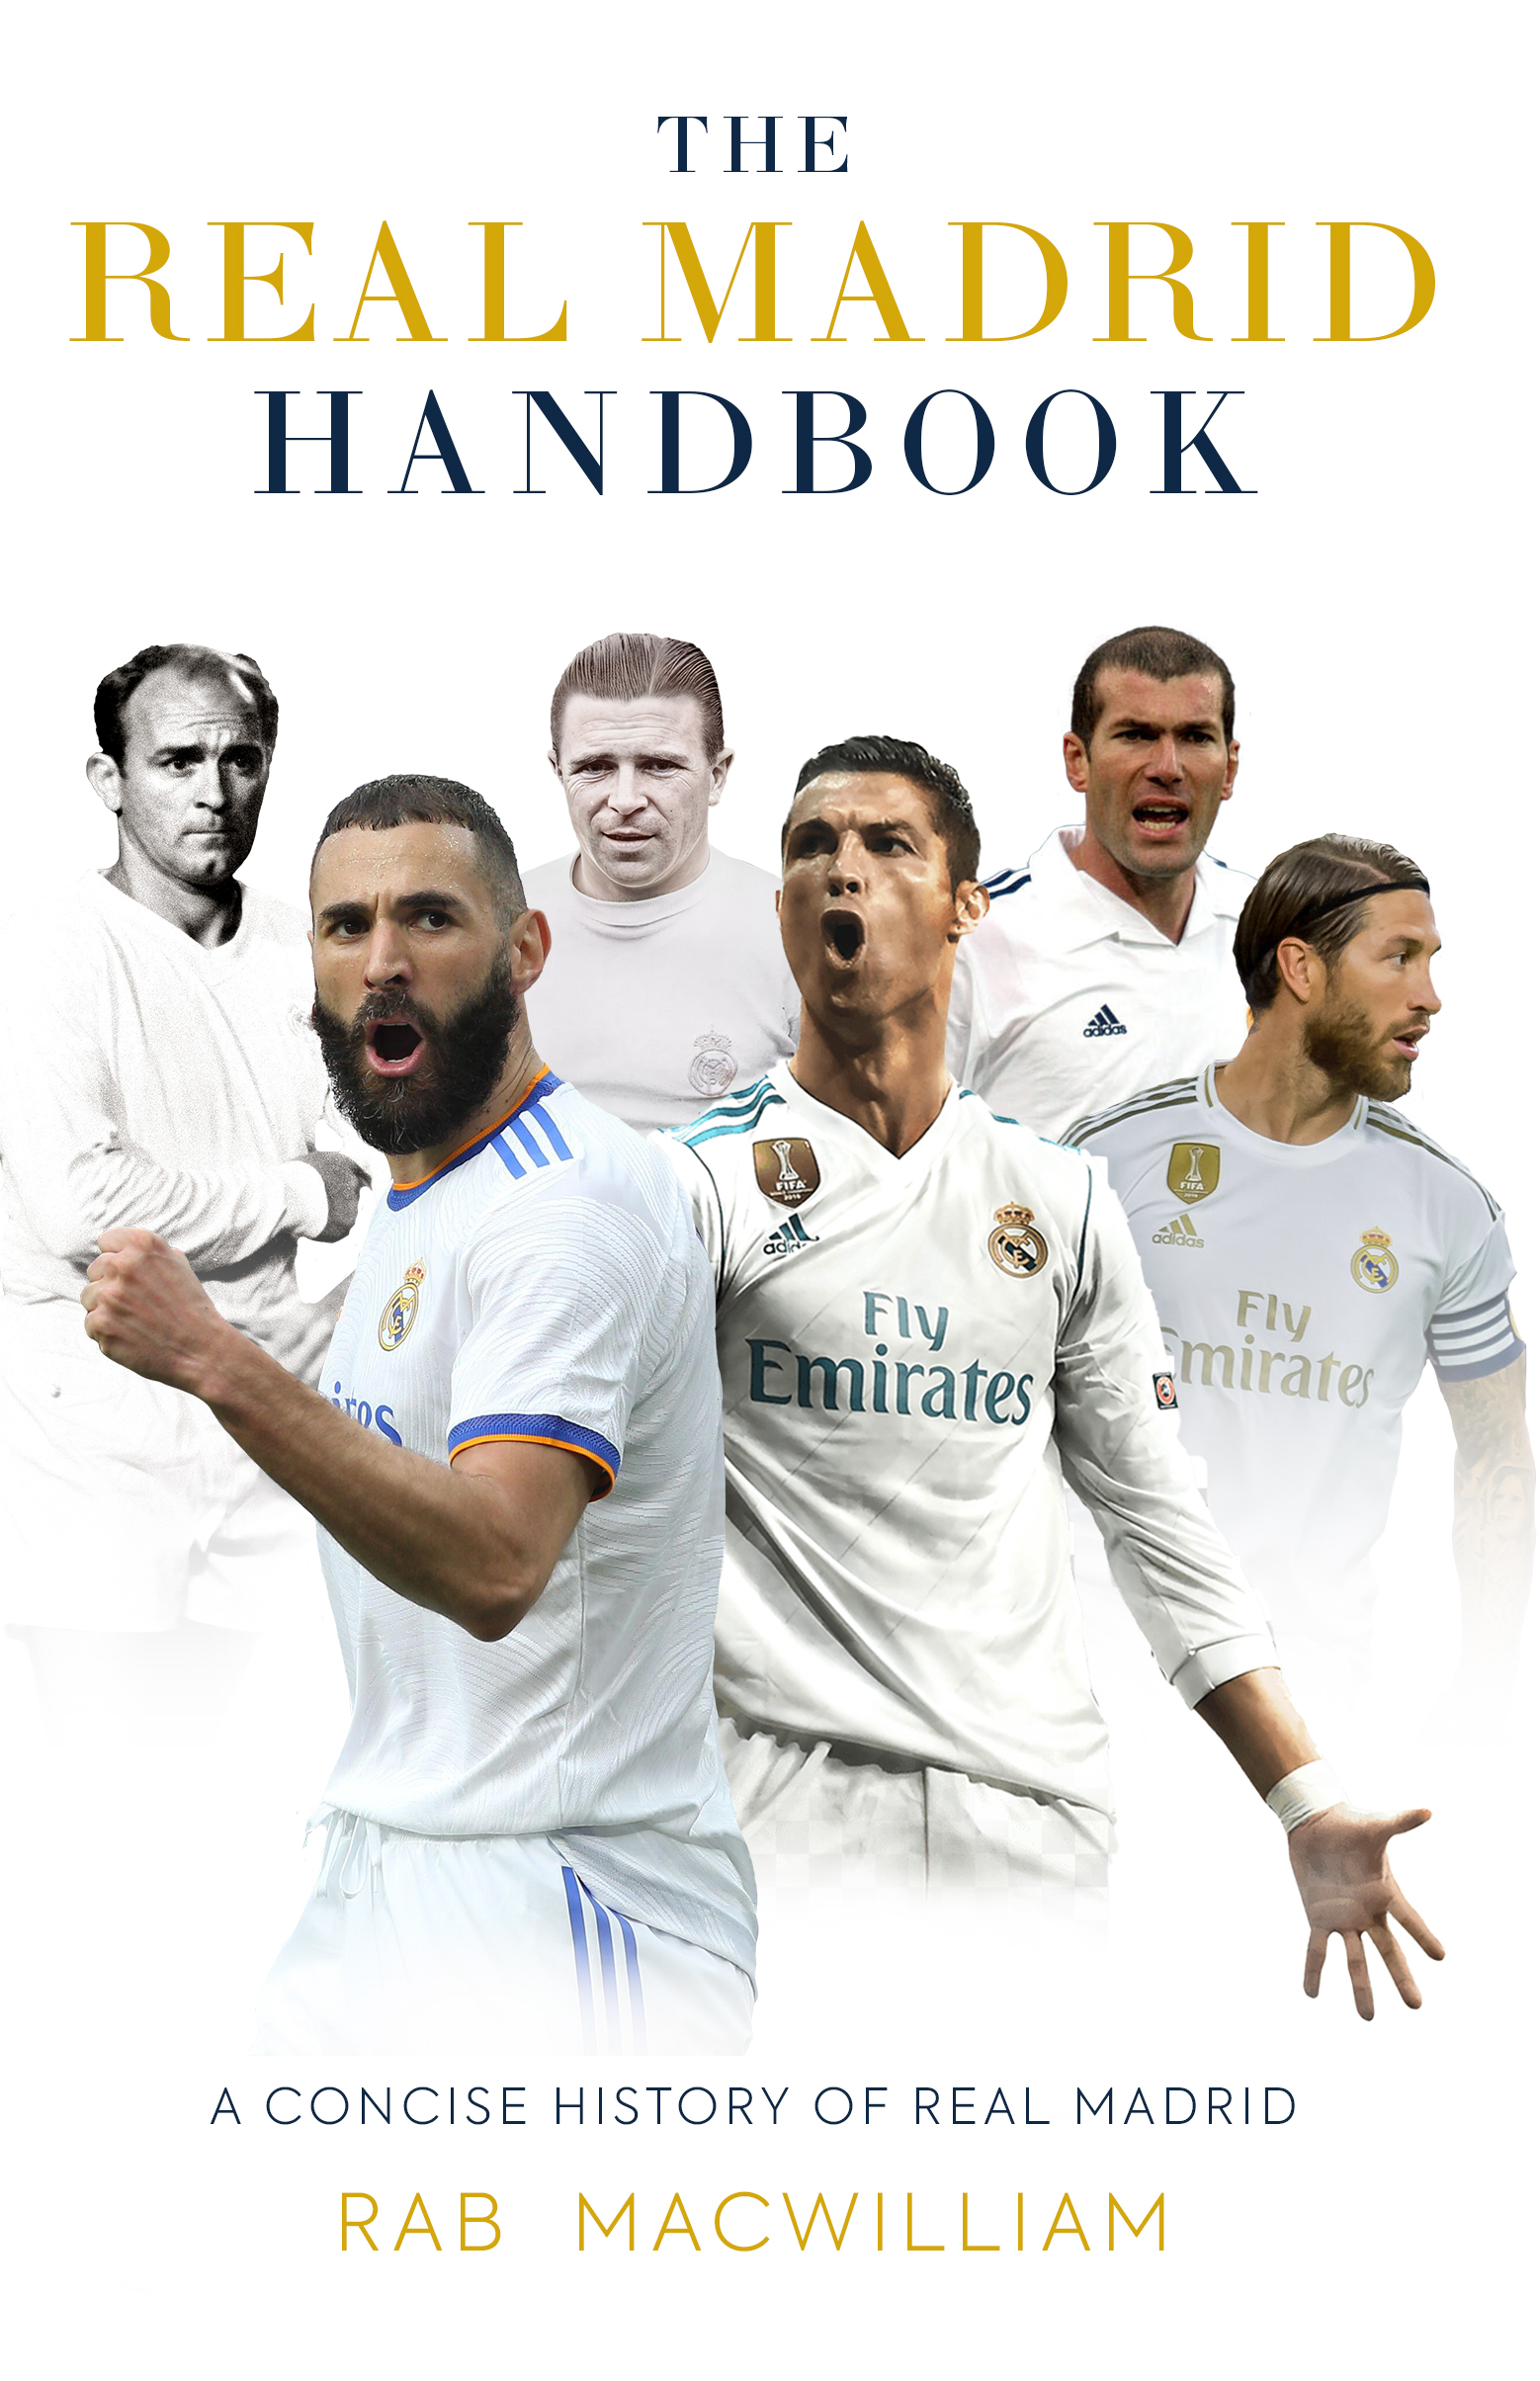 Read_Madrid_Handbook_04